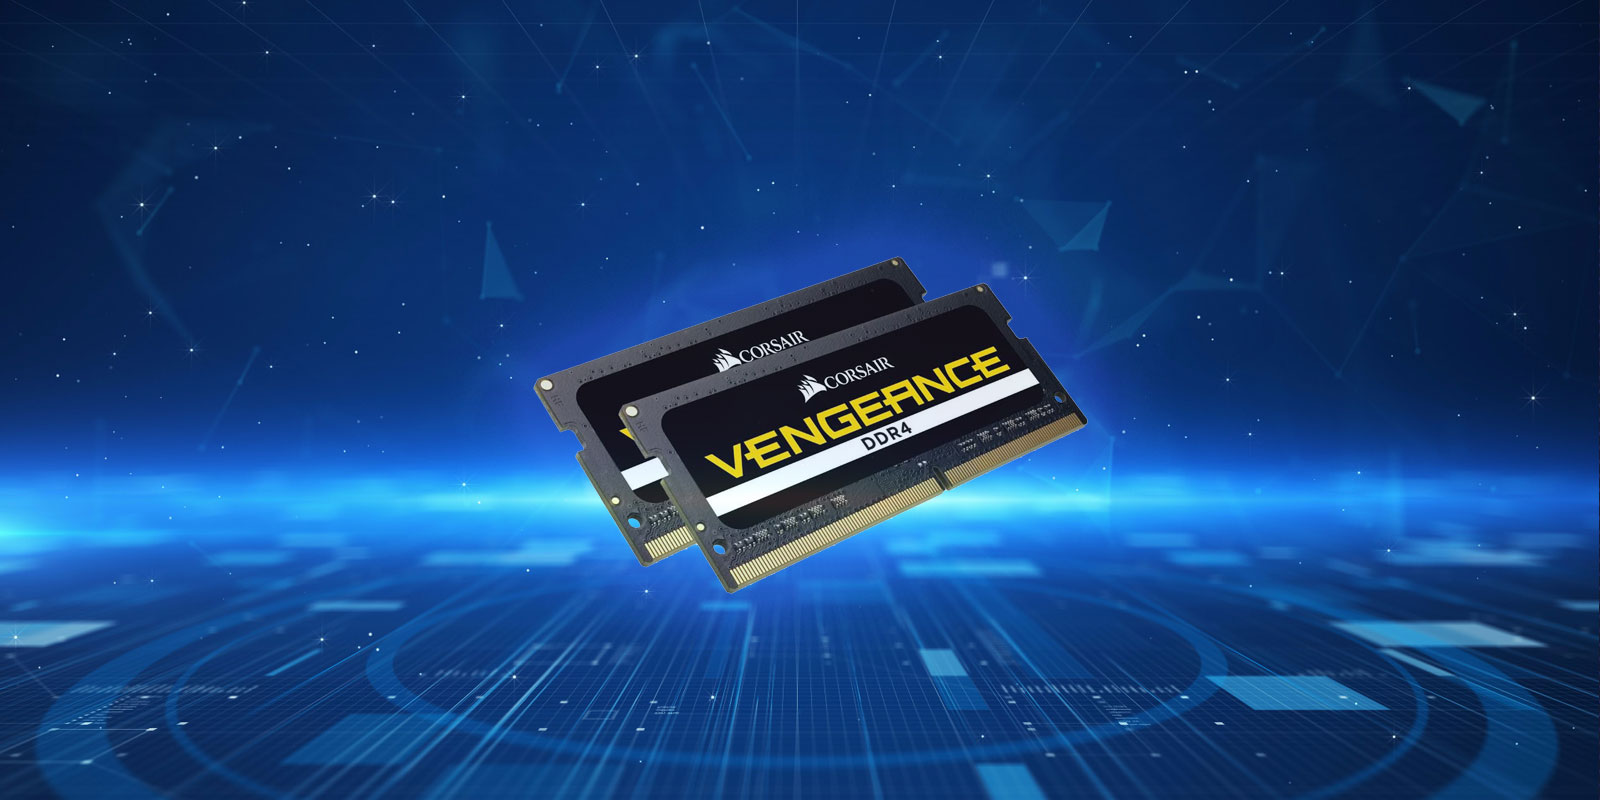 Corsair Vengeance DDR4 SODIMM RAM Review (for the 2666 MHz Model)